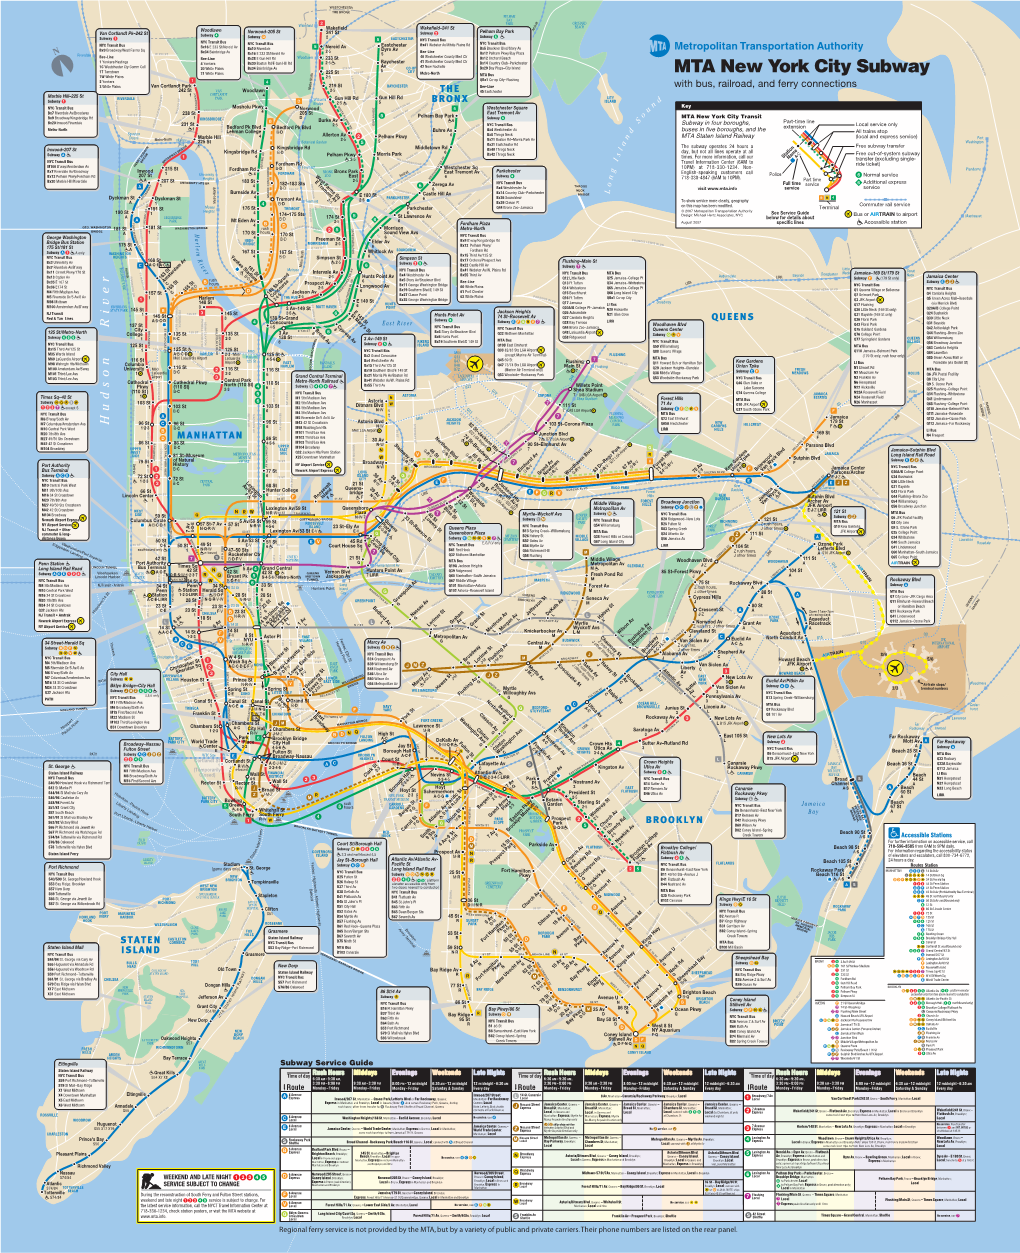 Subway Map of NY